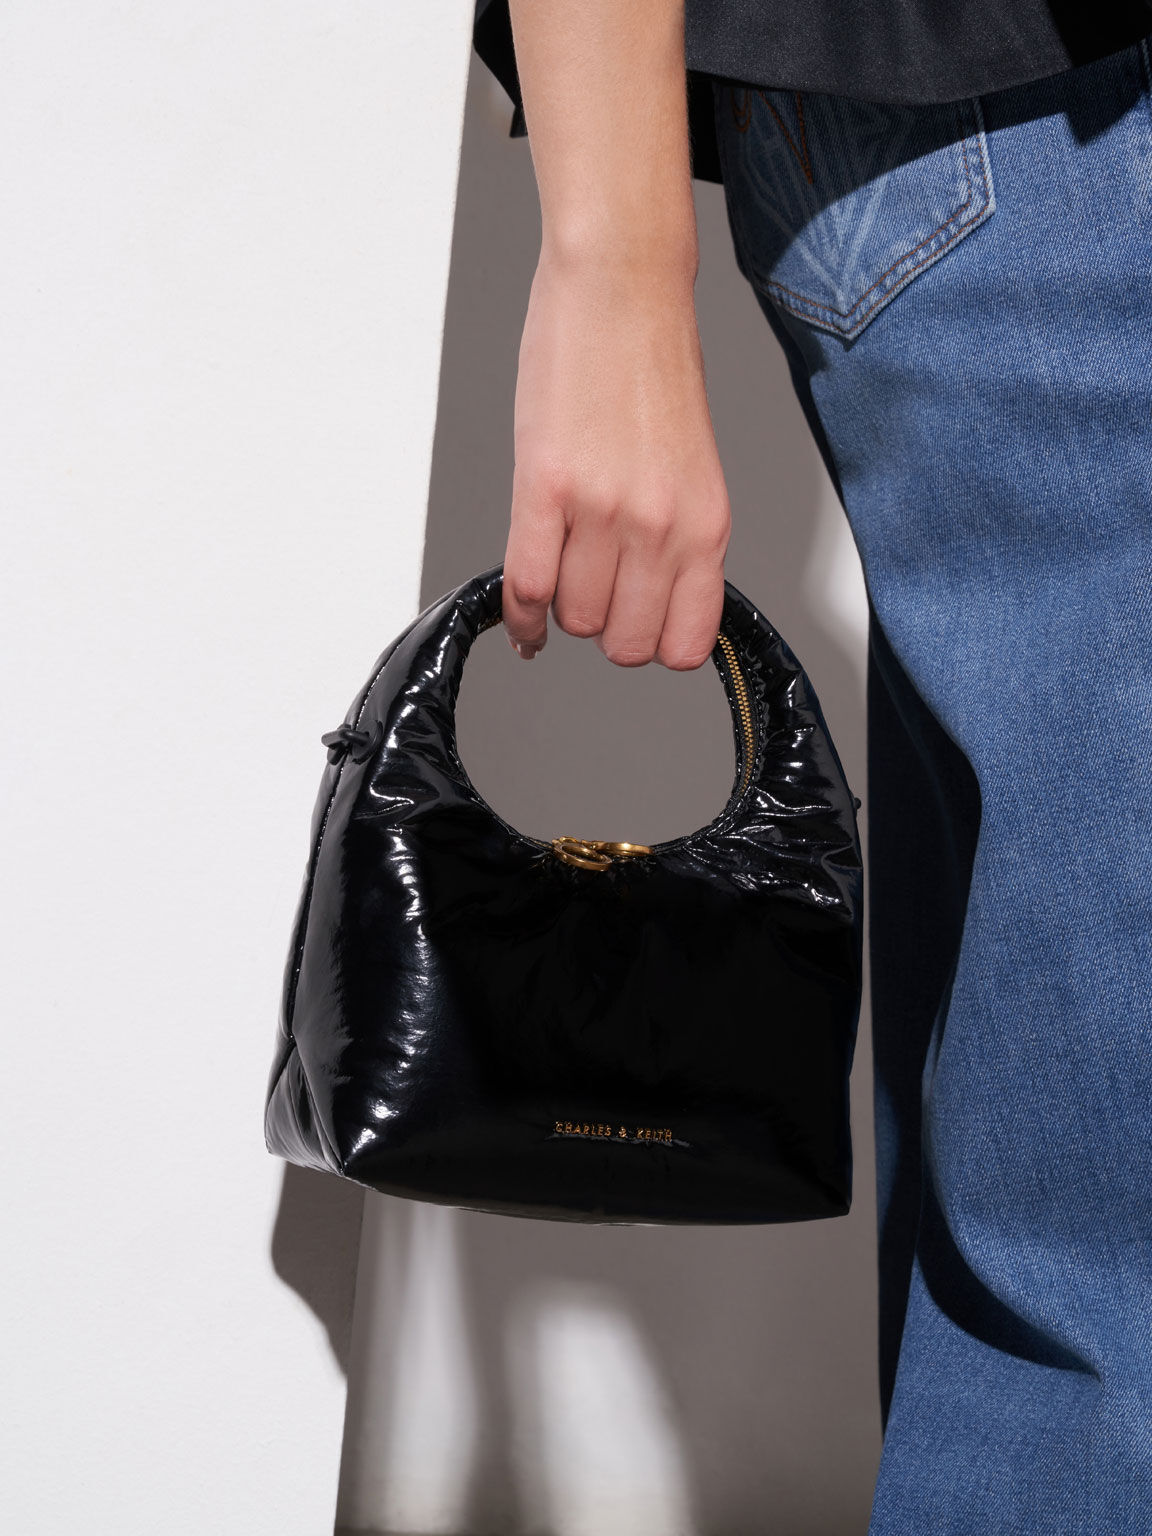 Arch Wrinkled-Effect Puffy Bag, Black, hi-res